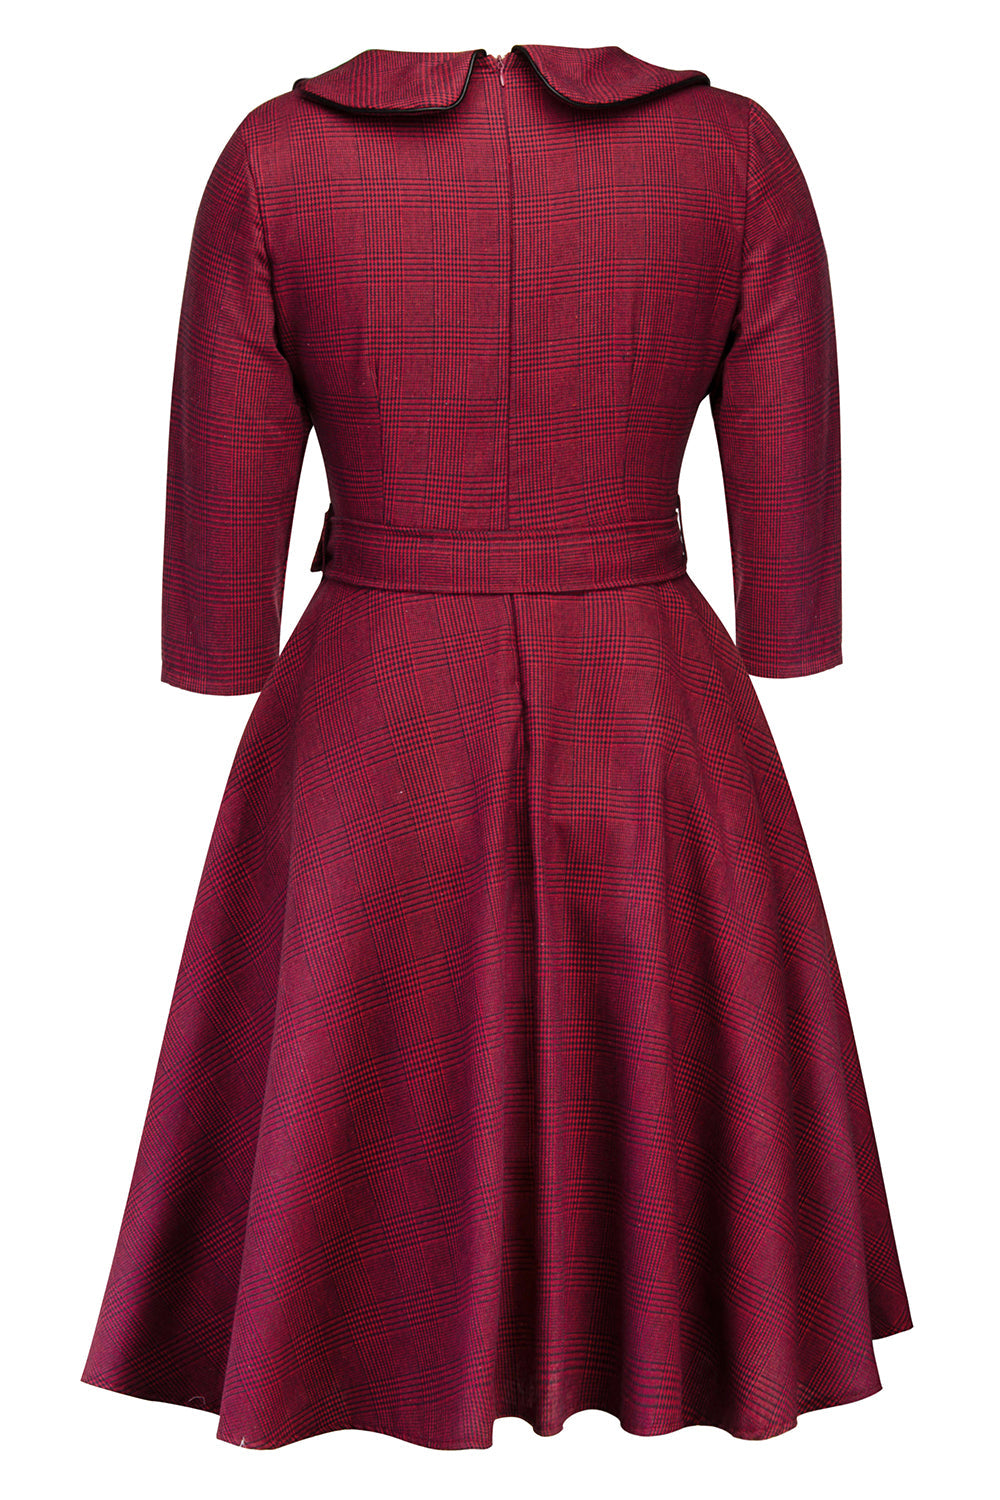 Retro Hepburn Style Plaid Vintage Dress